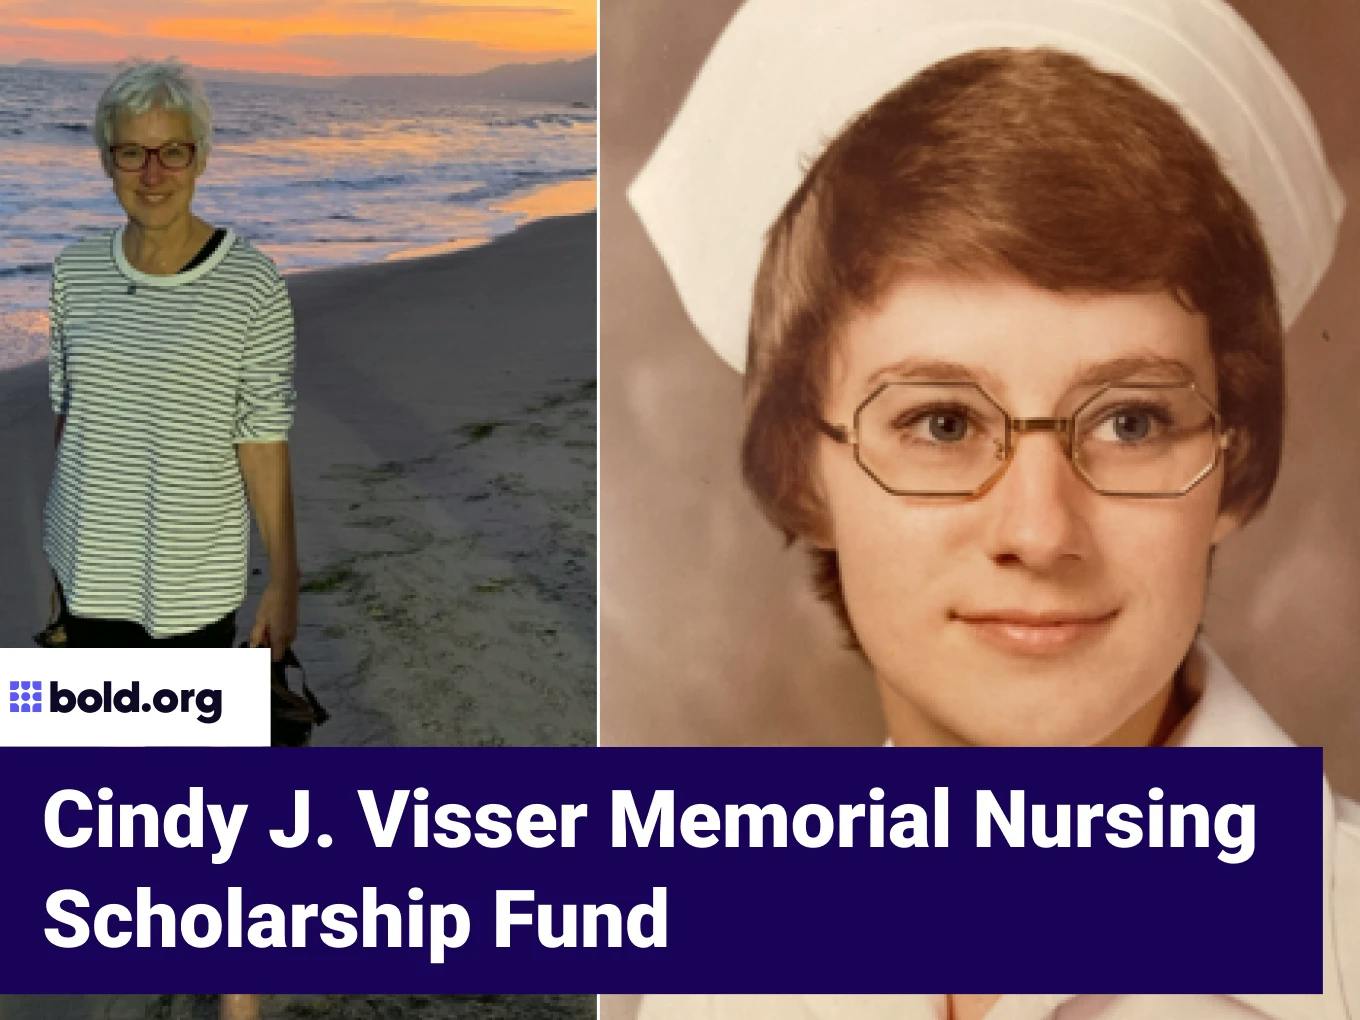 Cindy J. Visser Memorial Nursing Scholarship Fund